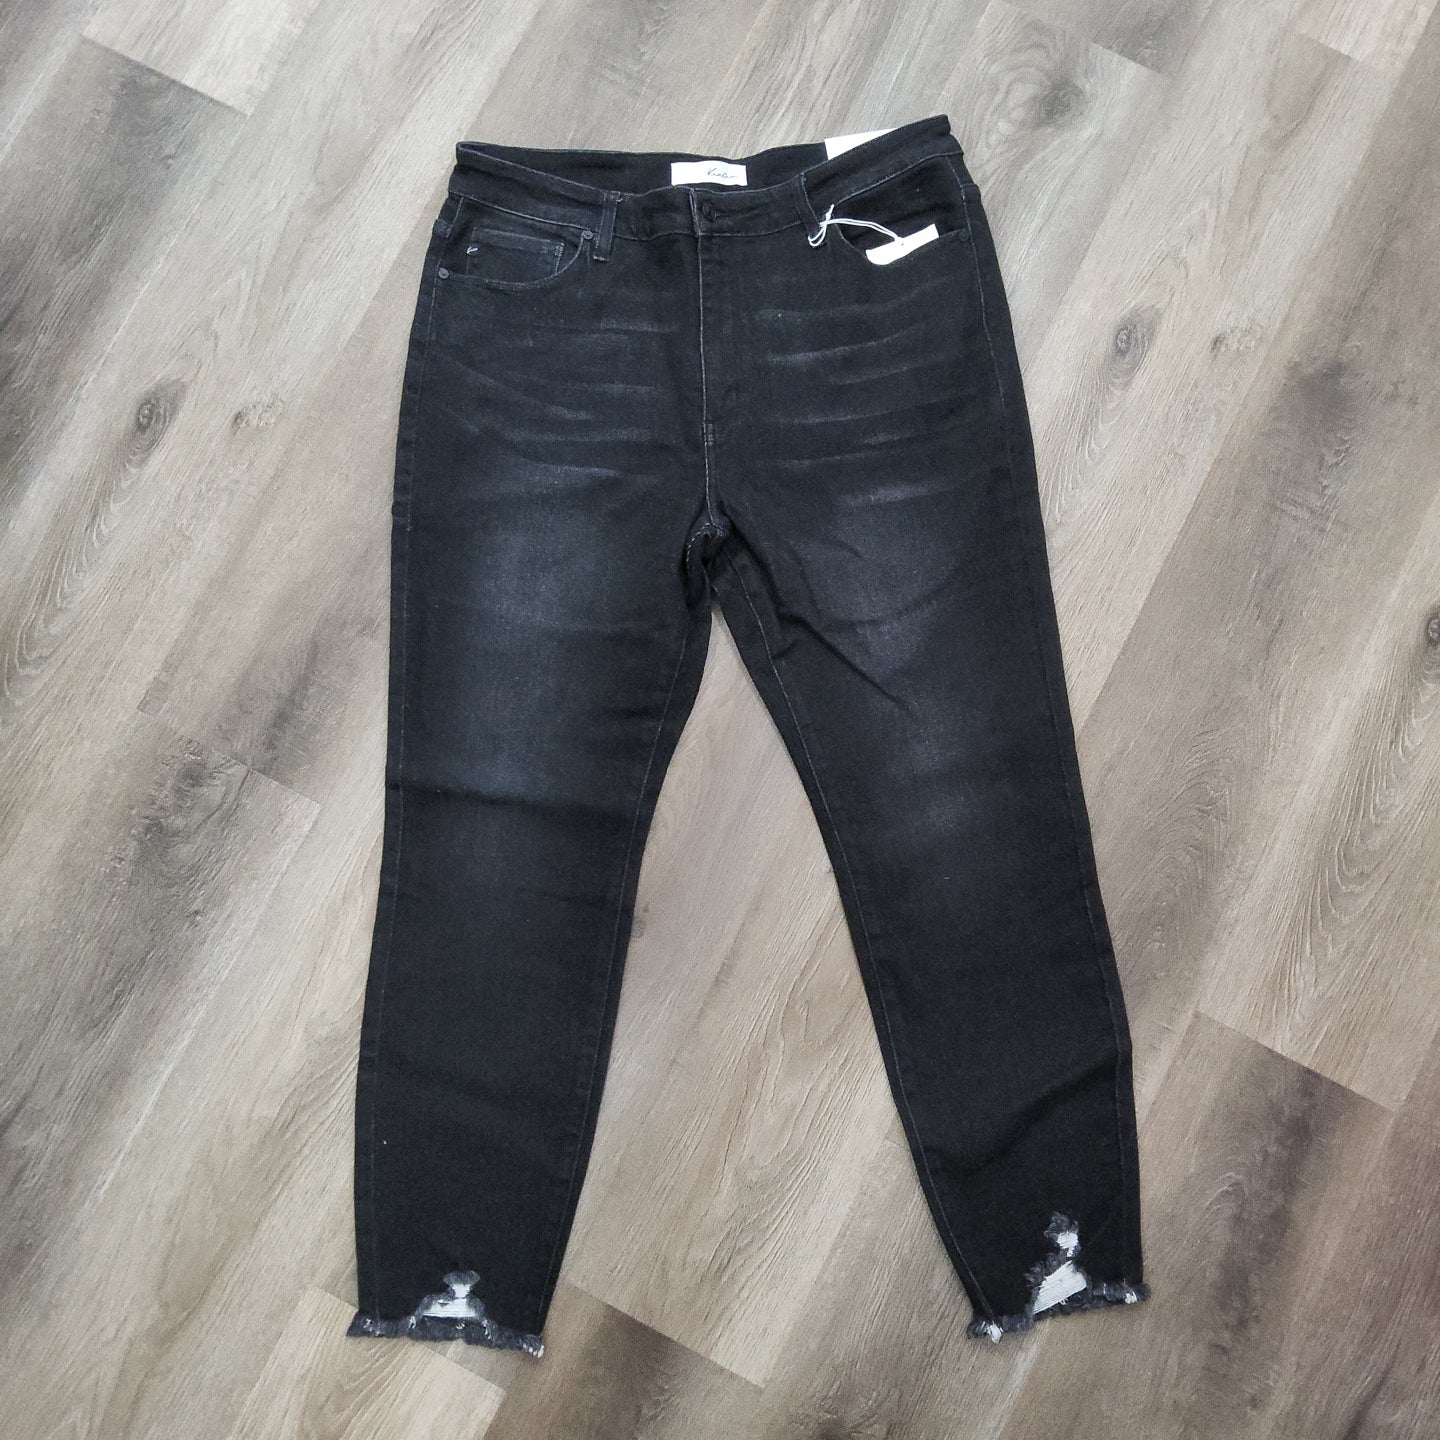 Kancan Sharkbite Black Jeans